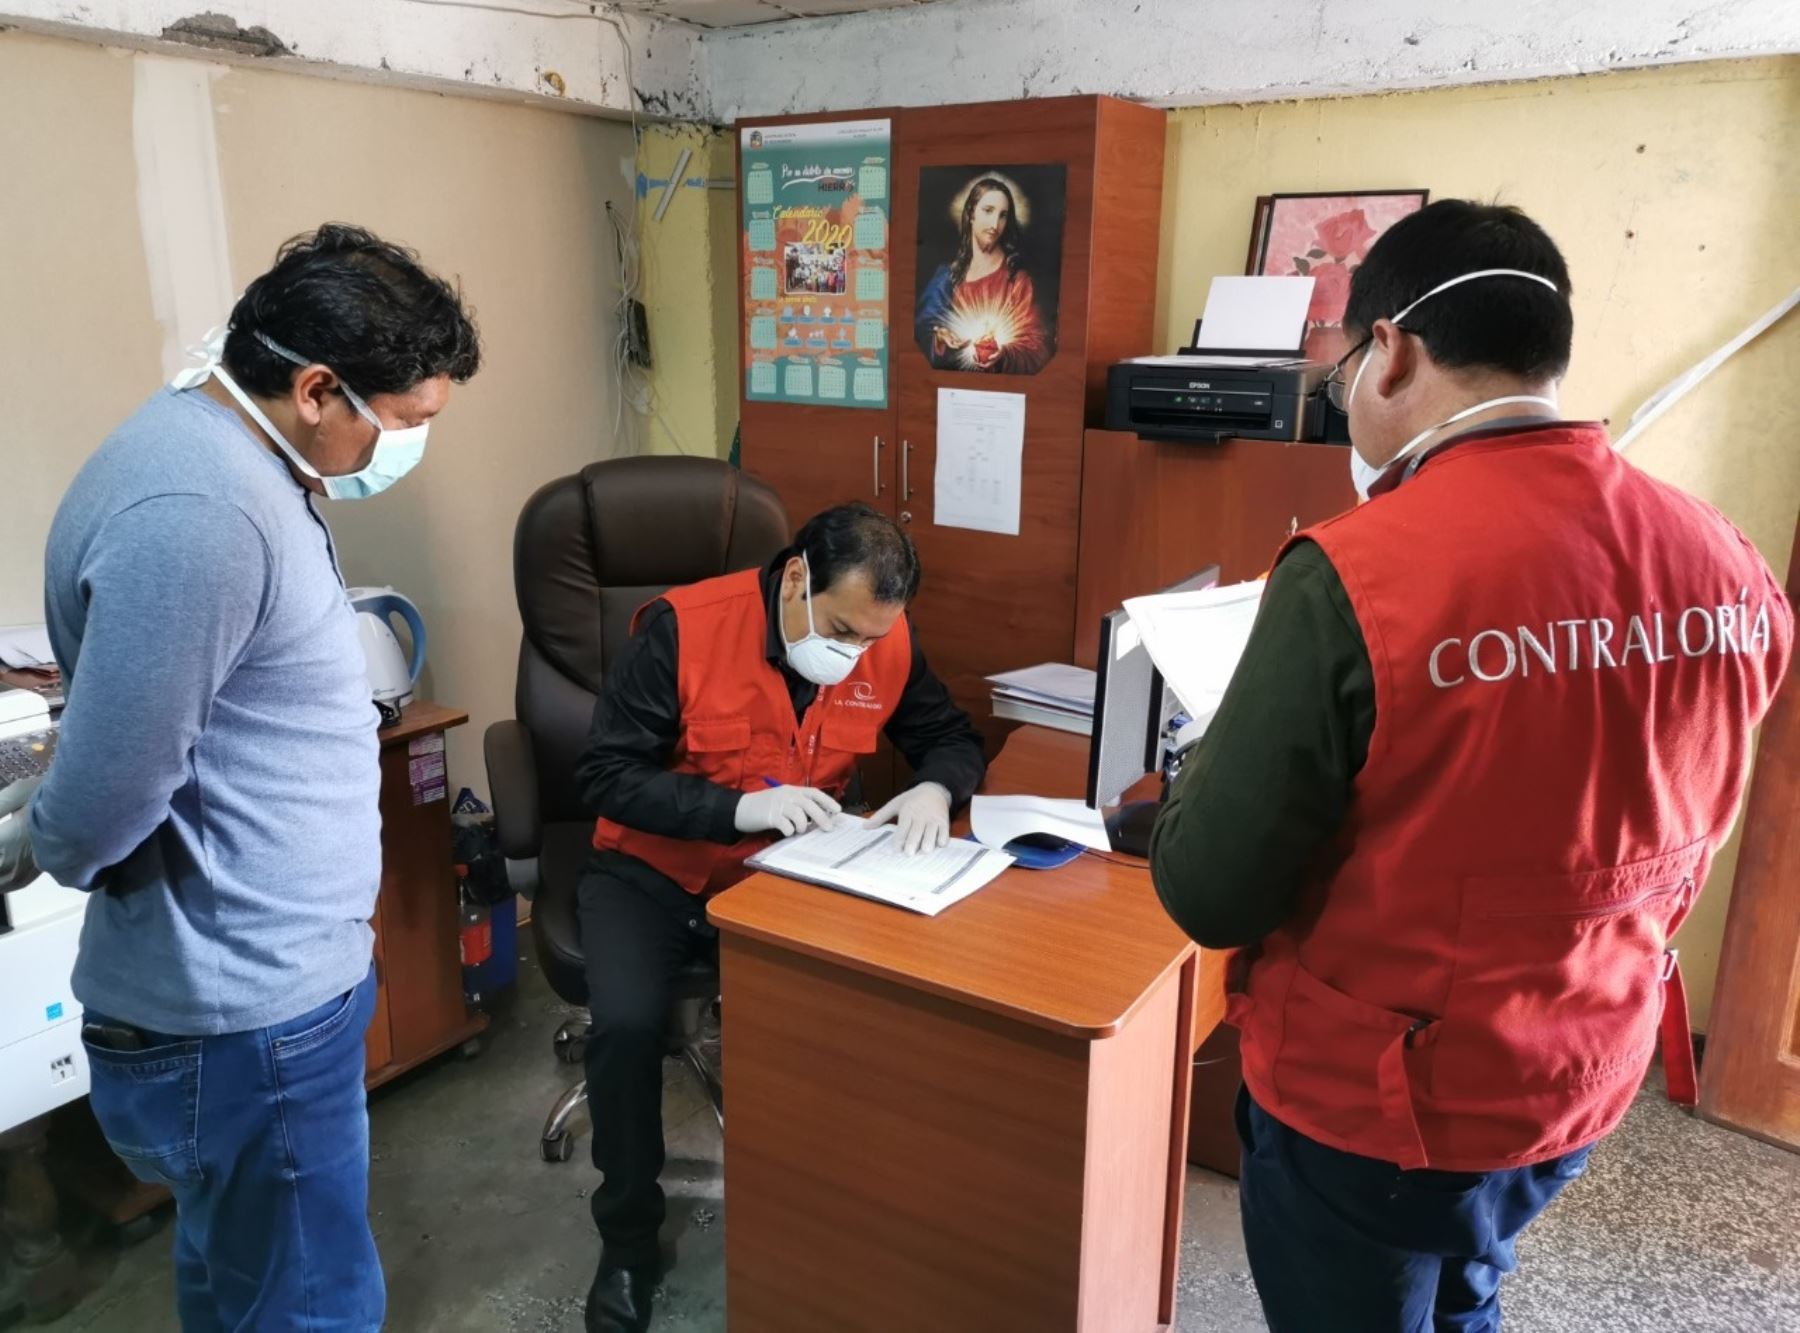 La Contraloría General anunció que realizará 43 servicios de control posterior en entidades públicas de la región Ayacucho.